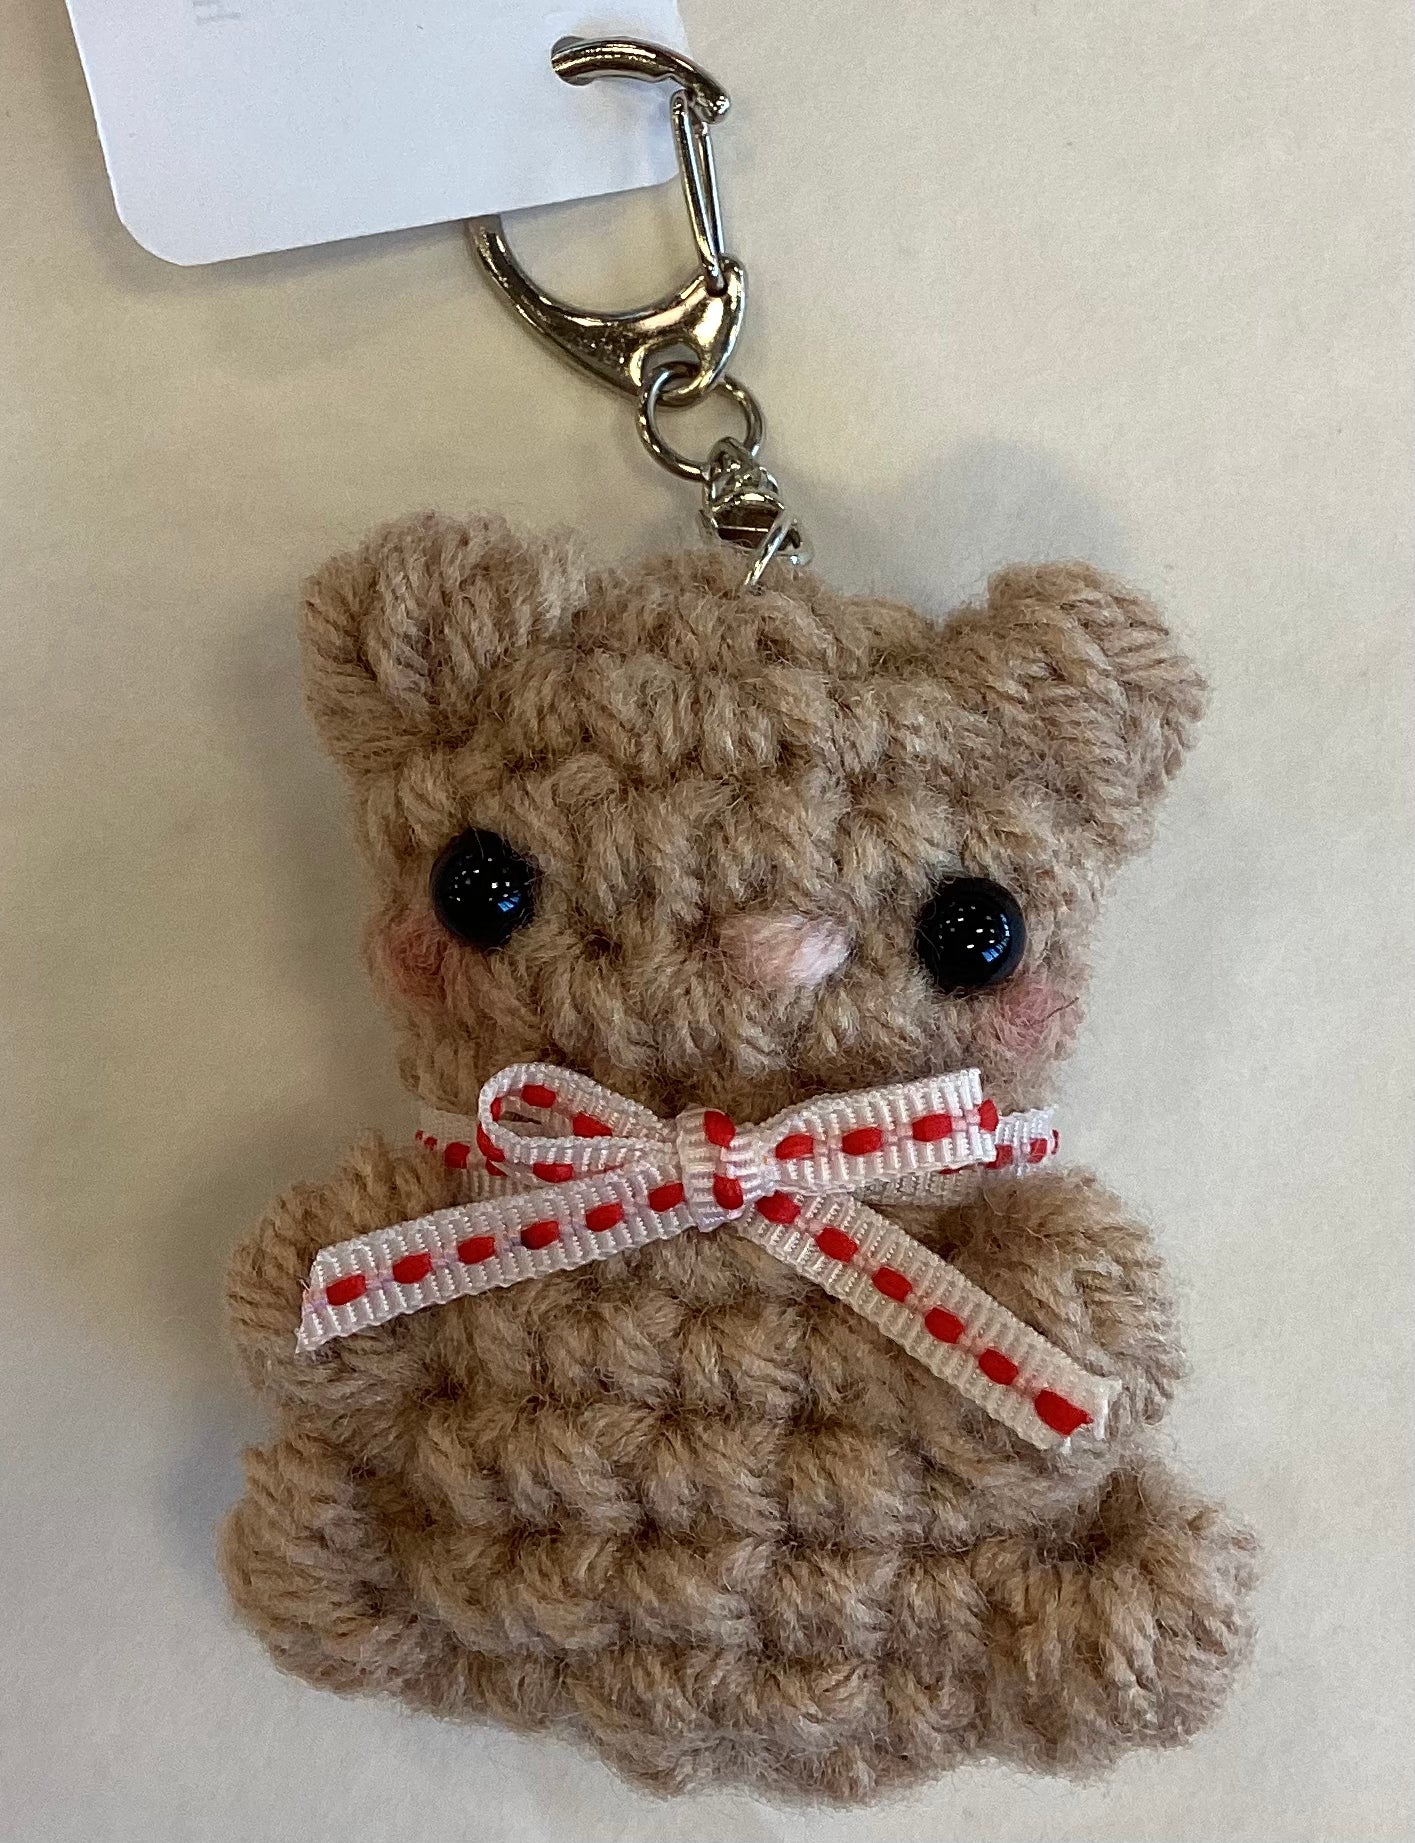 Teddy Bear Keychain – The Fourth